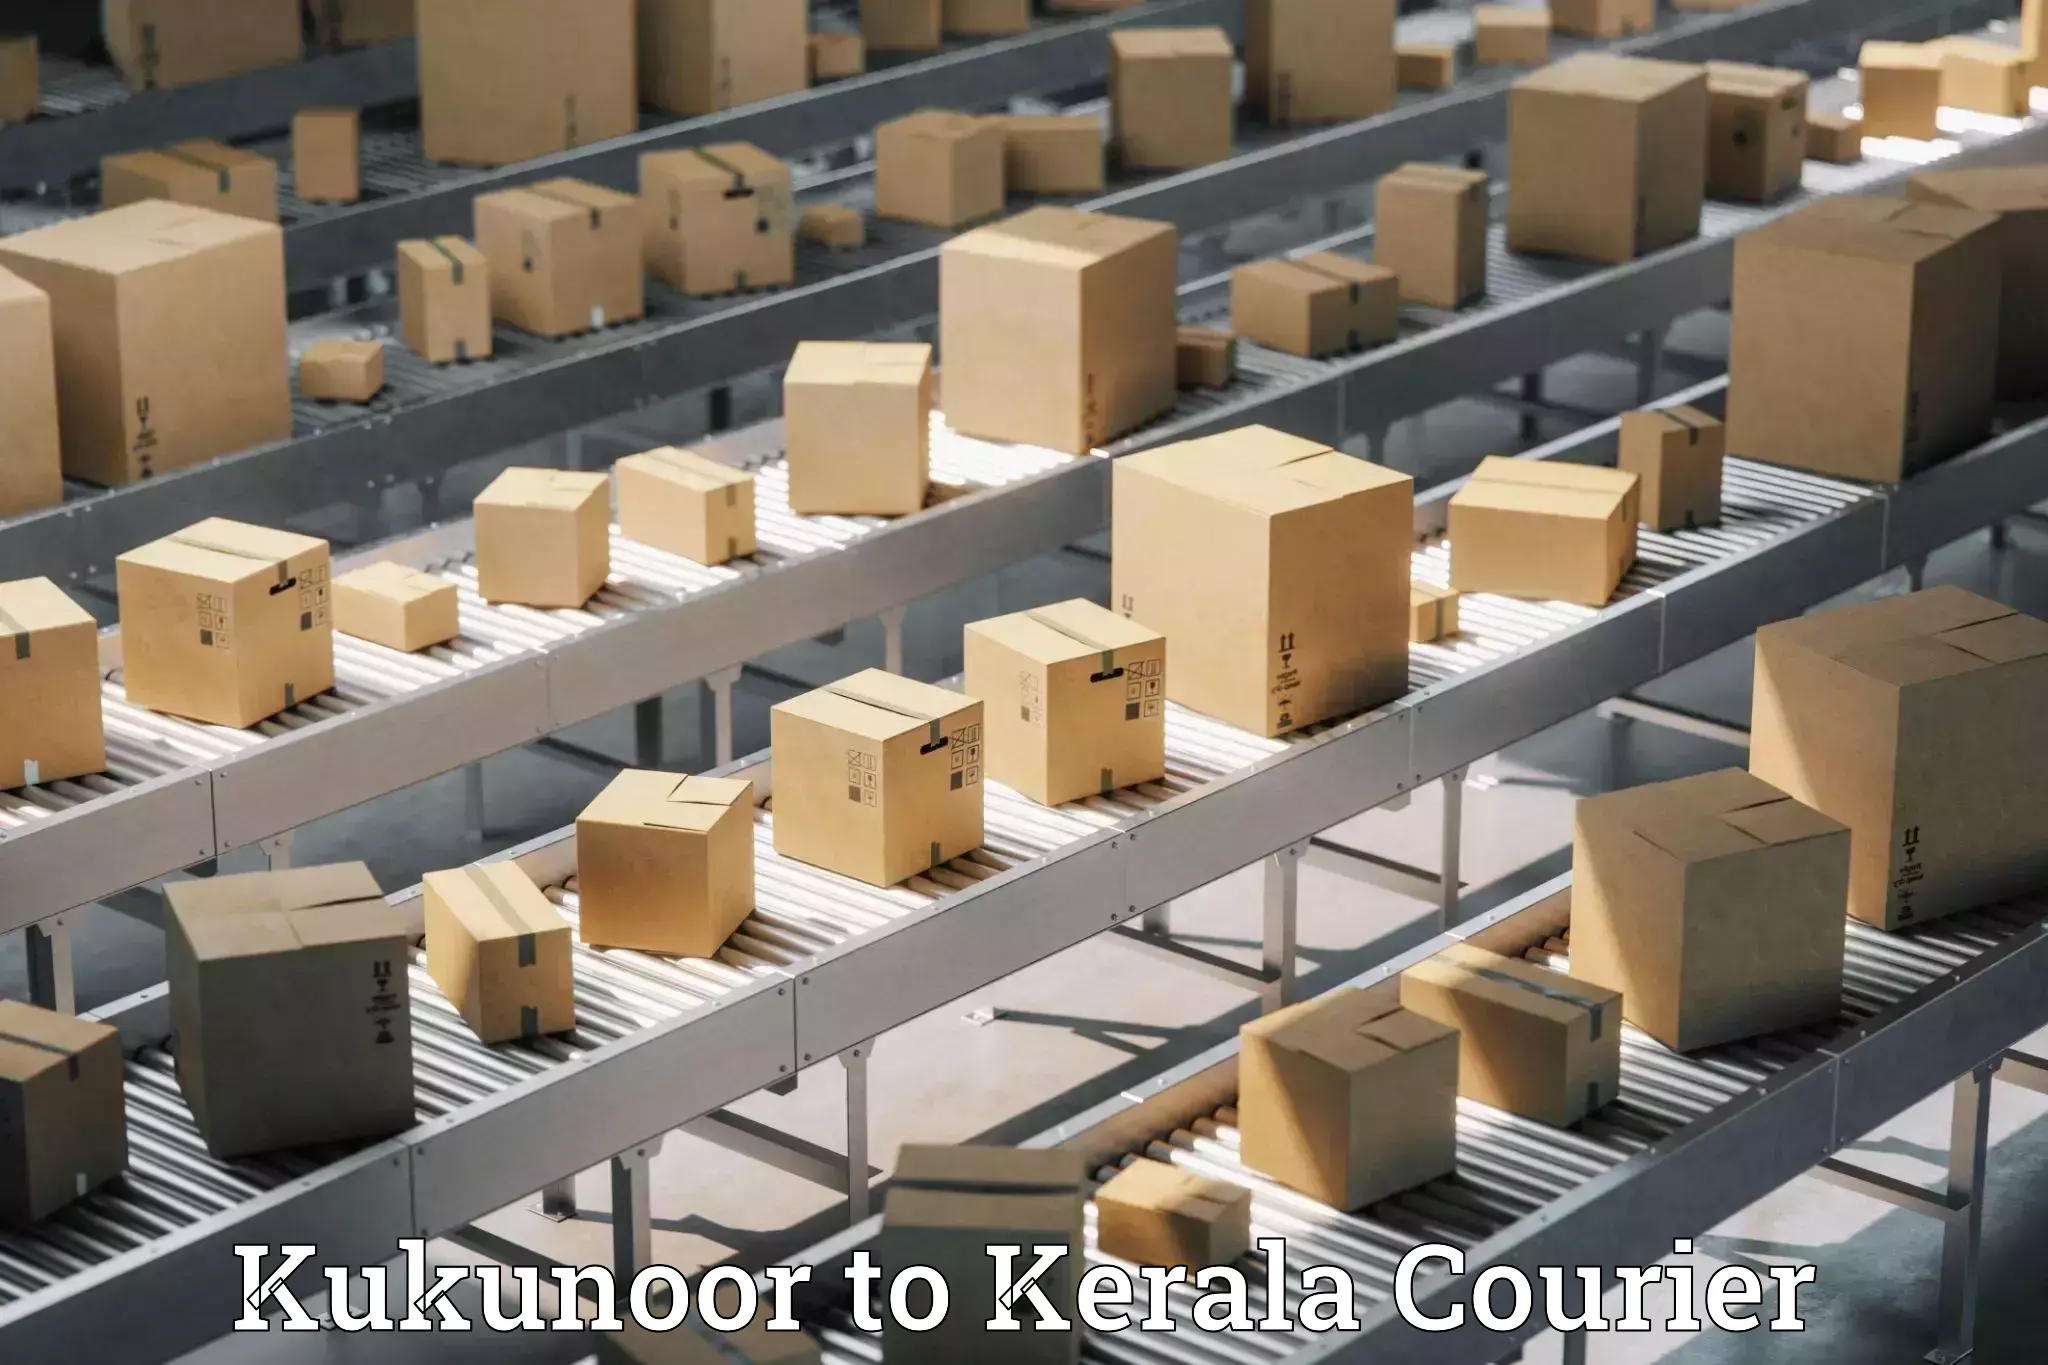 Efficient logistics management Kukunoor to Kannur